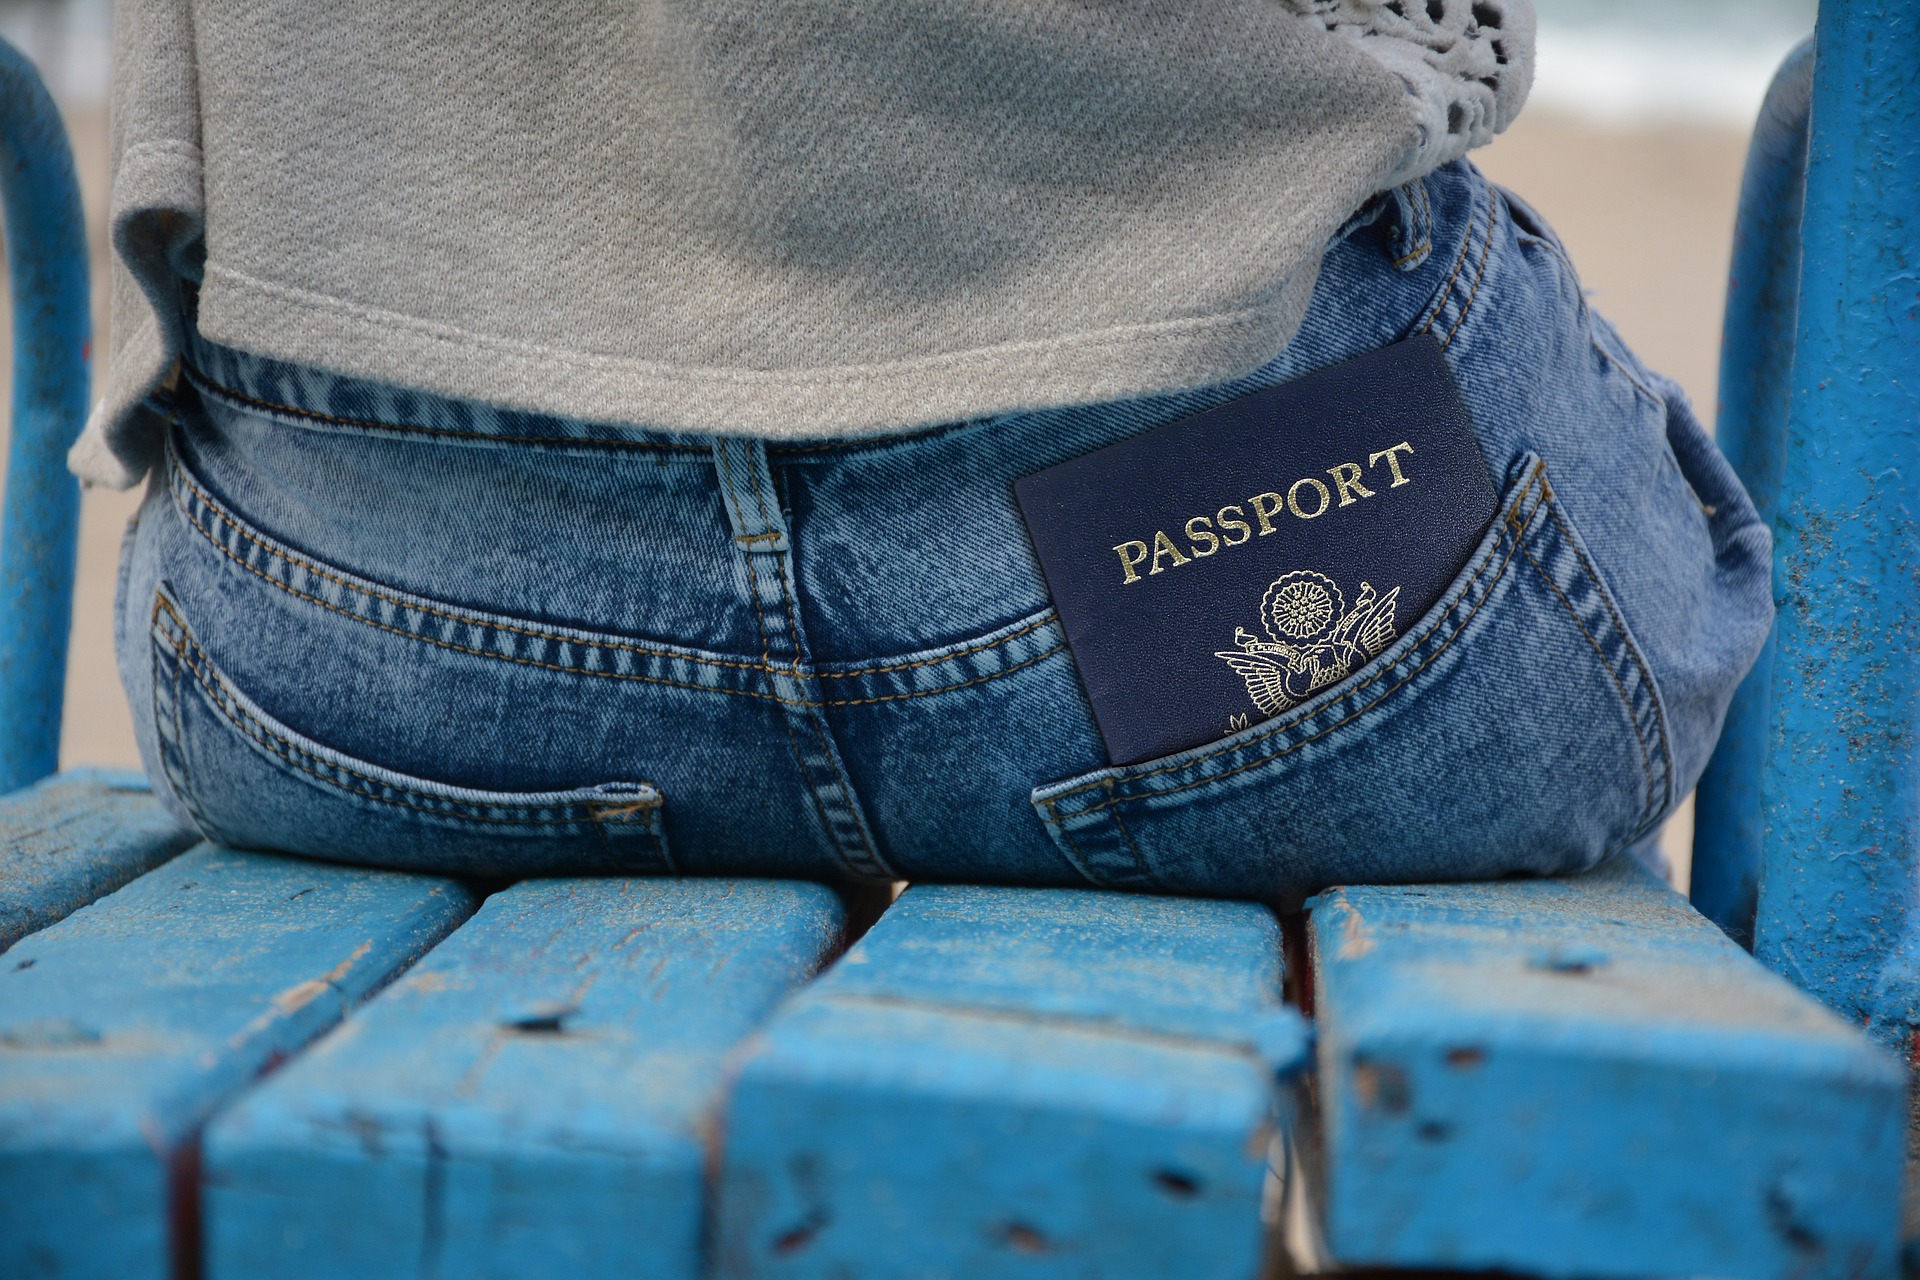 Paspoort in broekzak - passeport dans poche